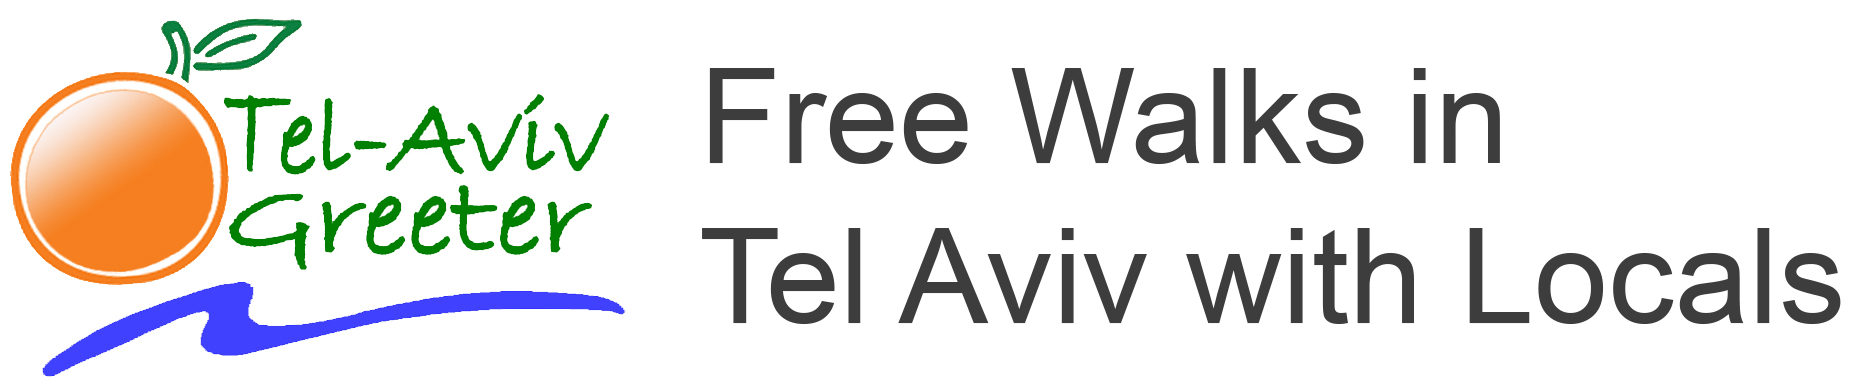 Tel Aviv Greeter